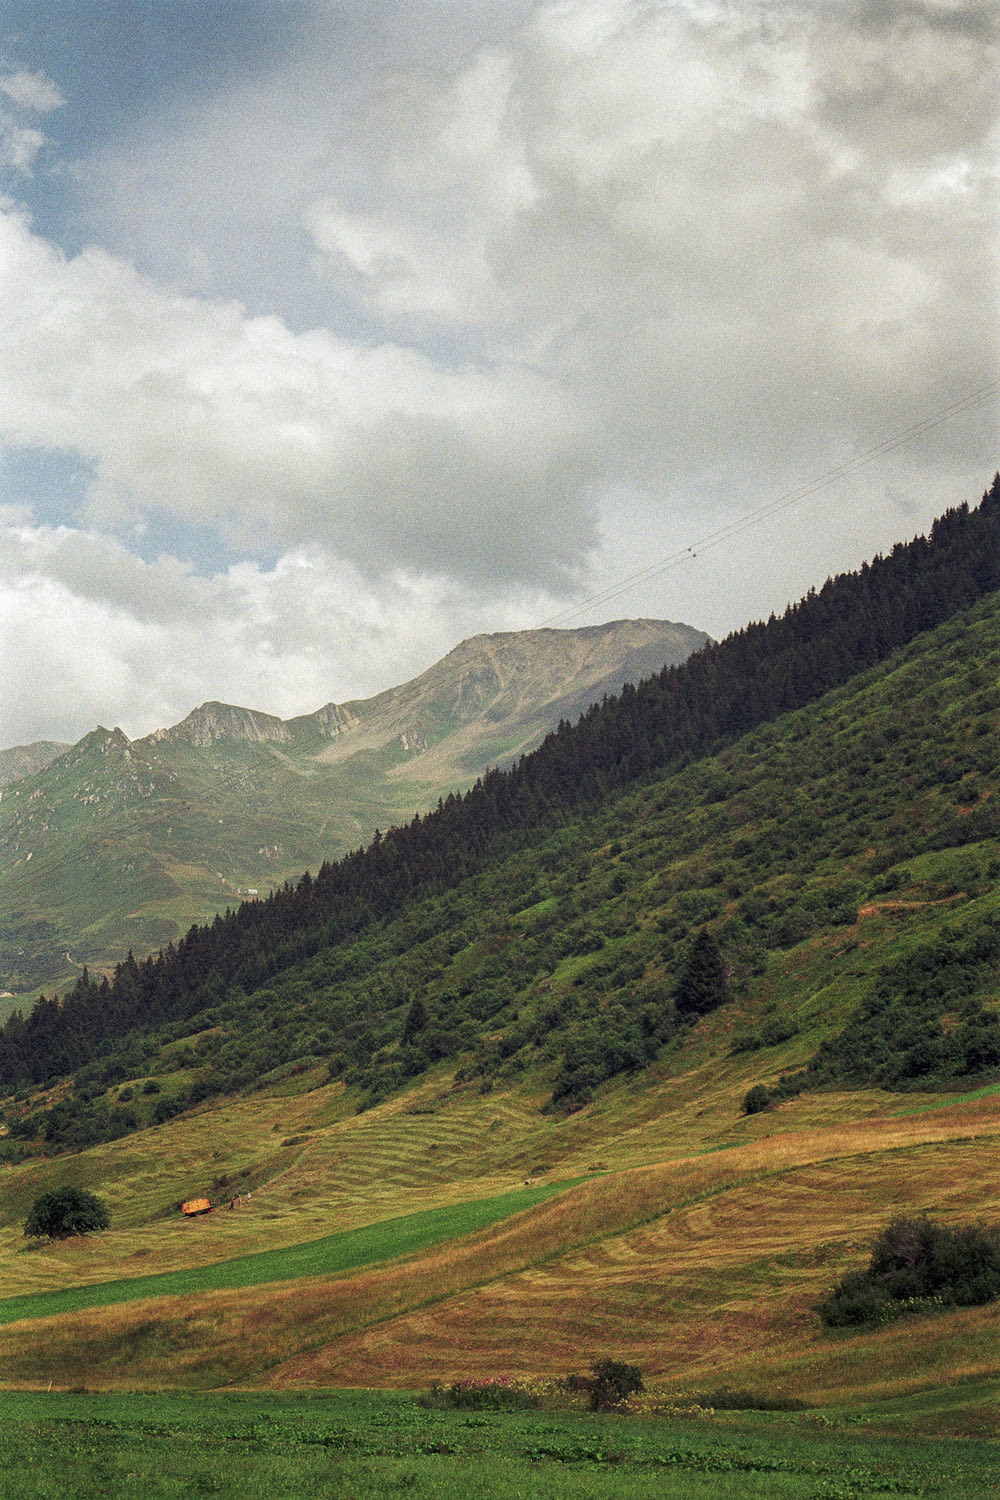 Un cheval paissant sur une colline verdoyante